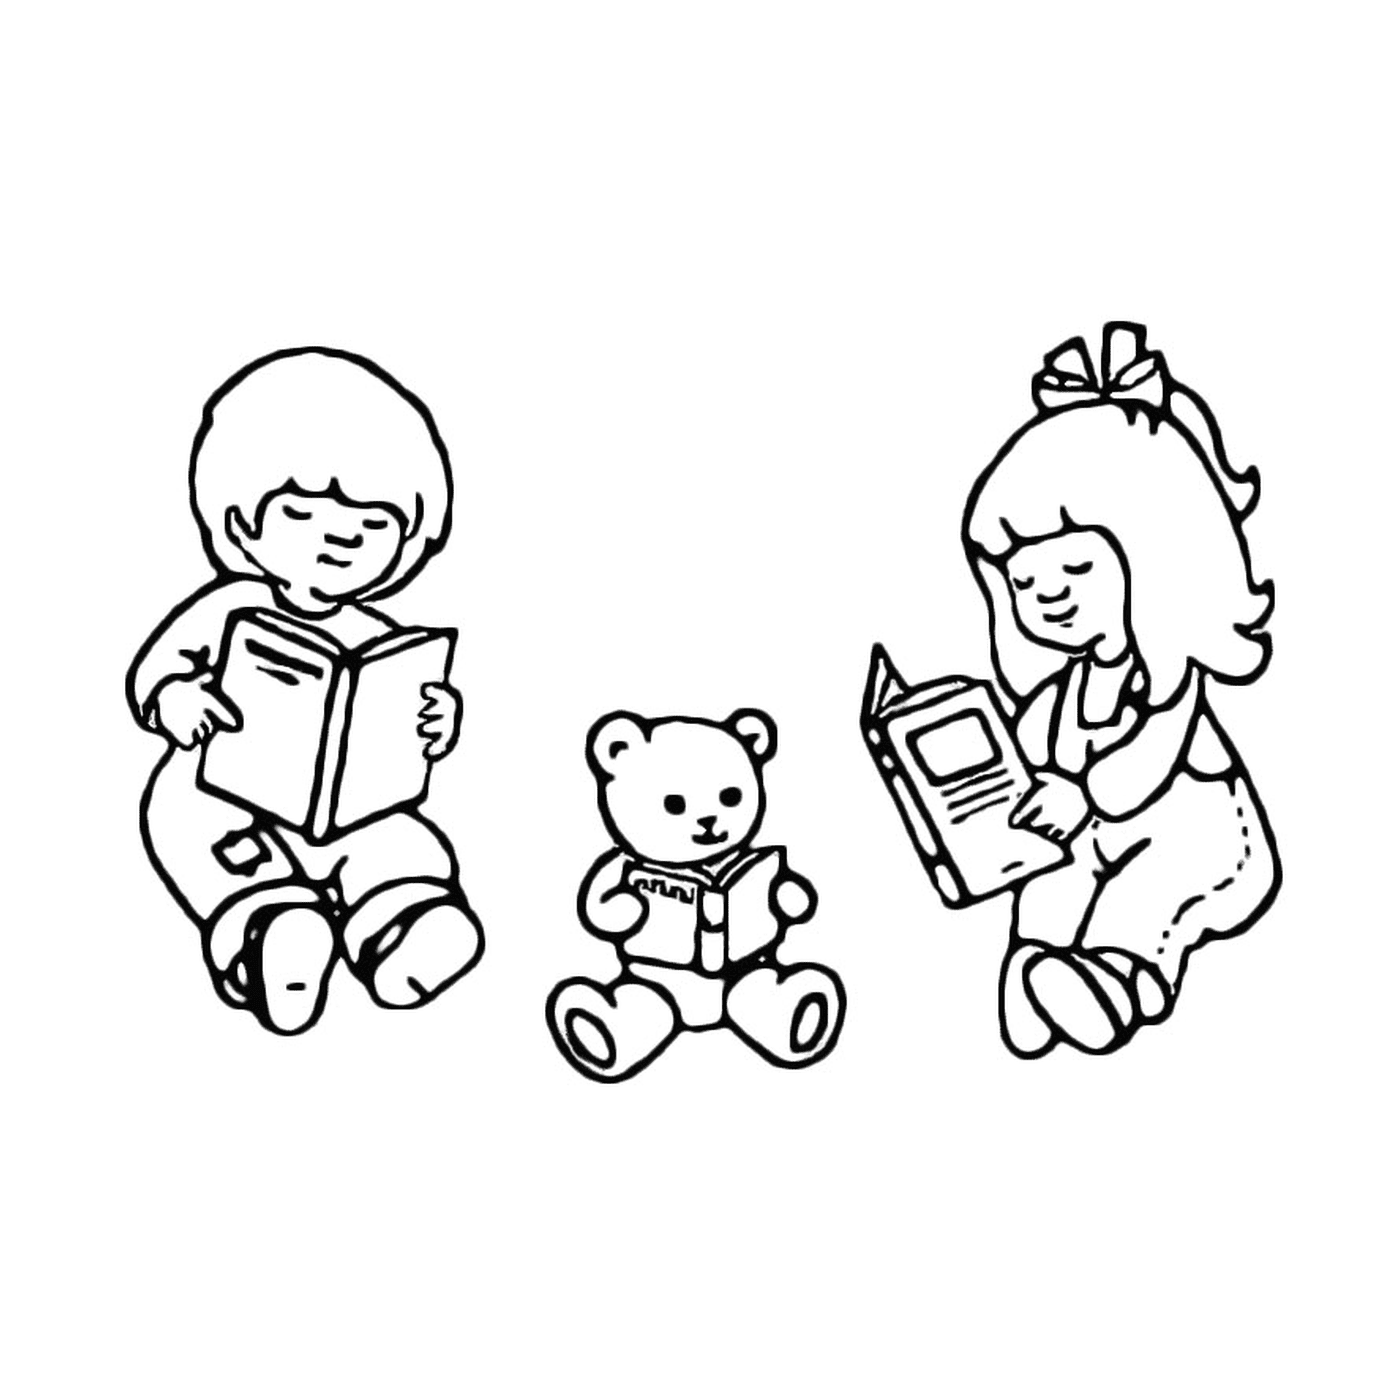  Трое детей читали книгу с плюшевым медведем 